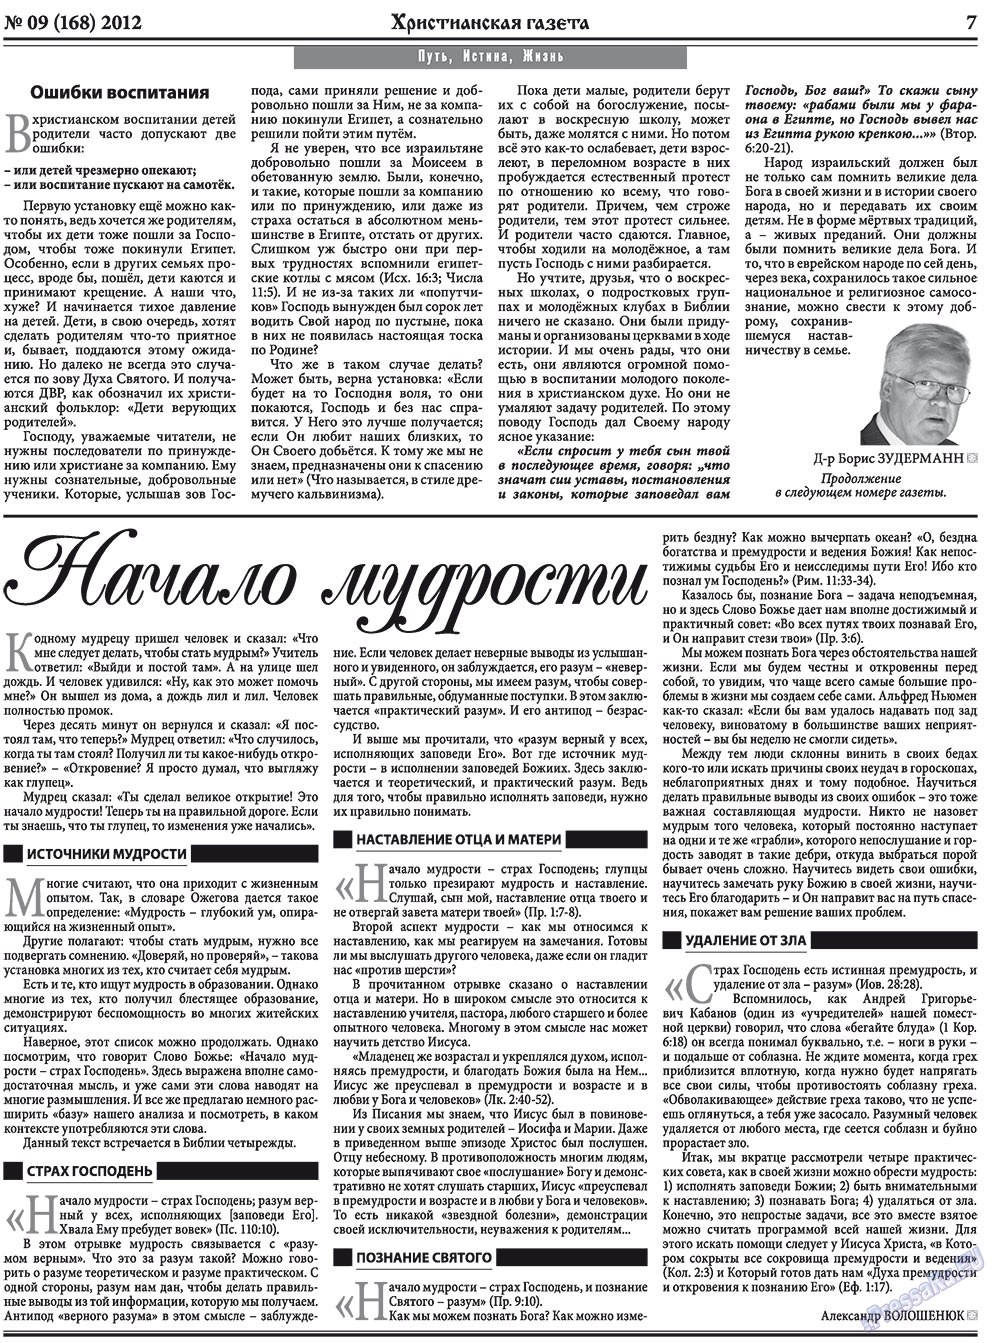 Христианская газета (газета). 2012 год, номер 9, стр. 7